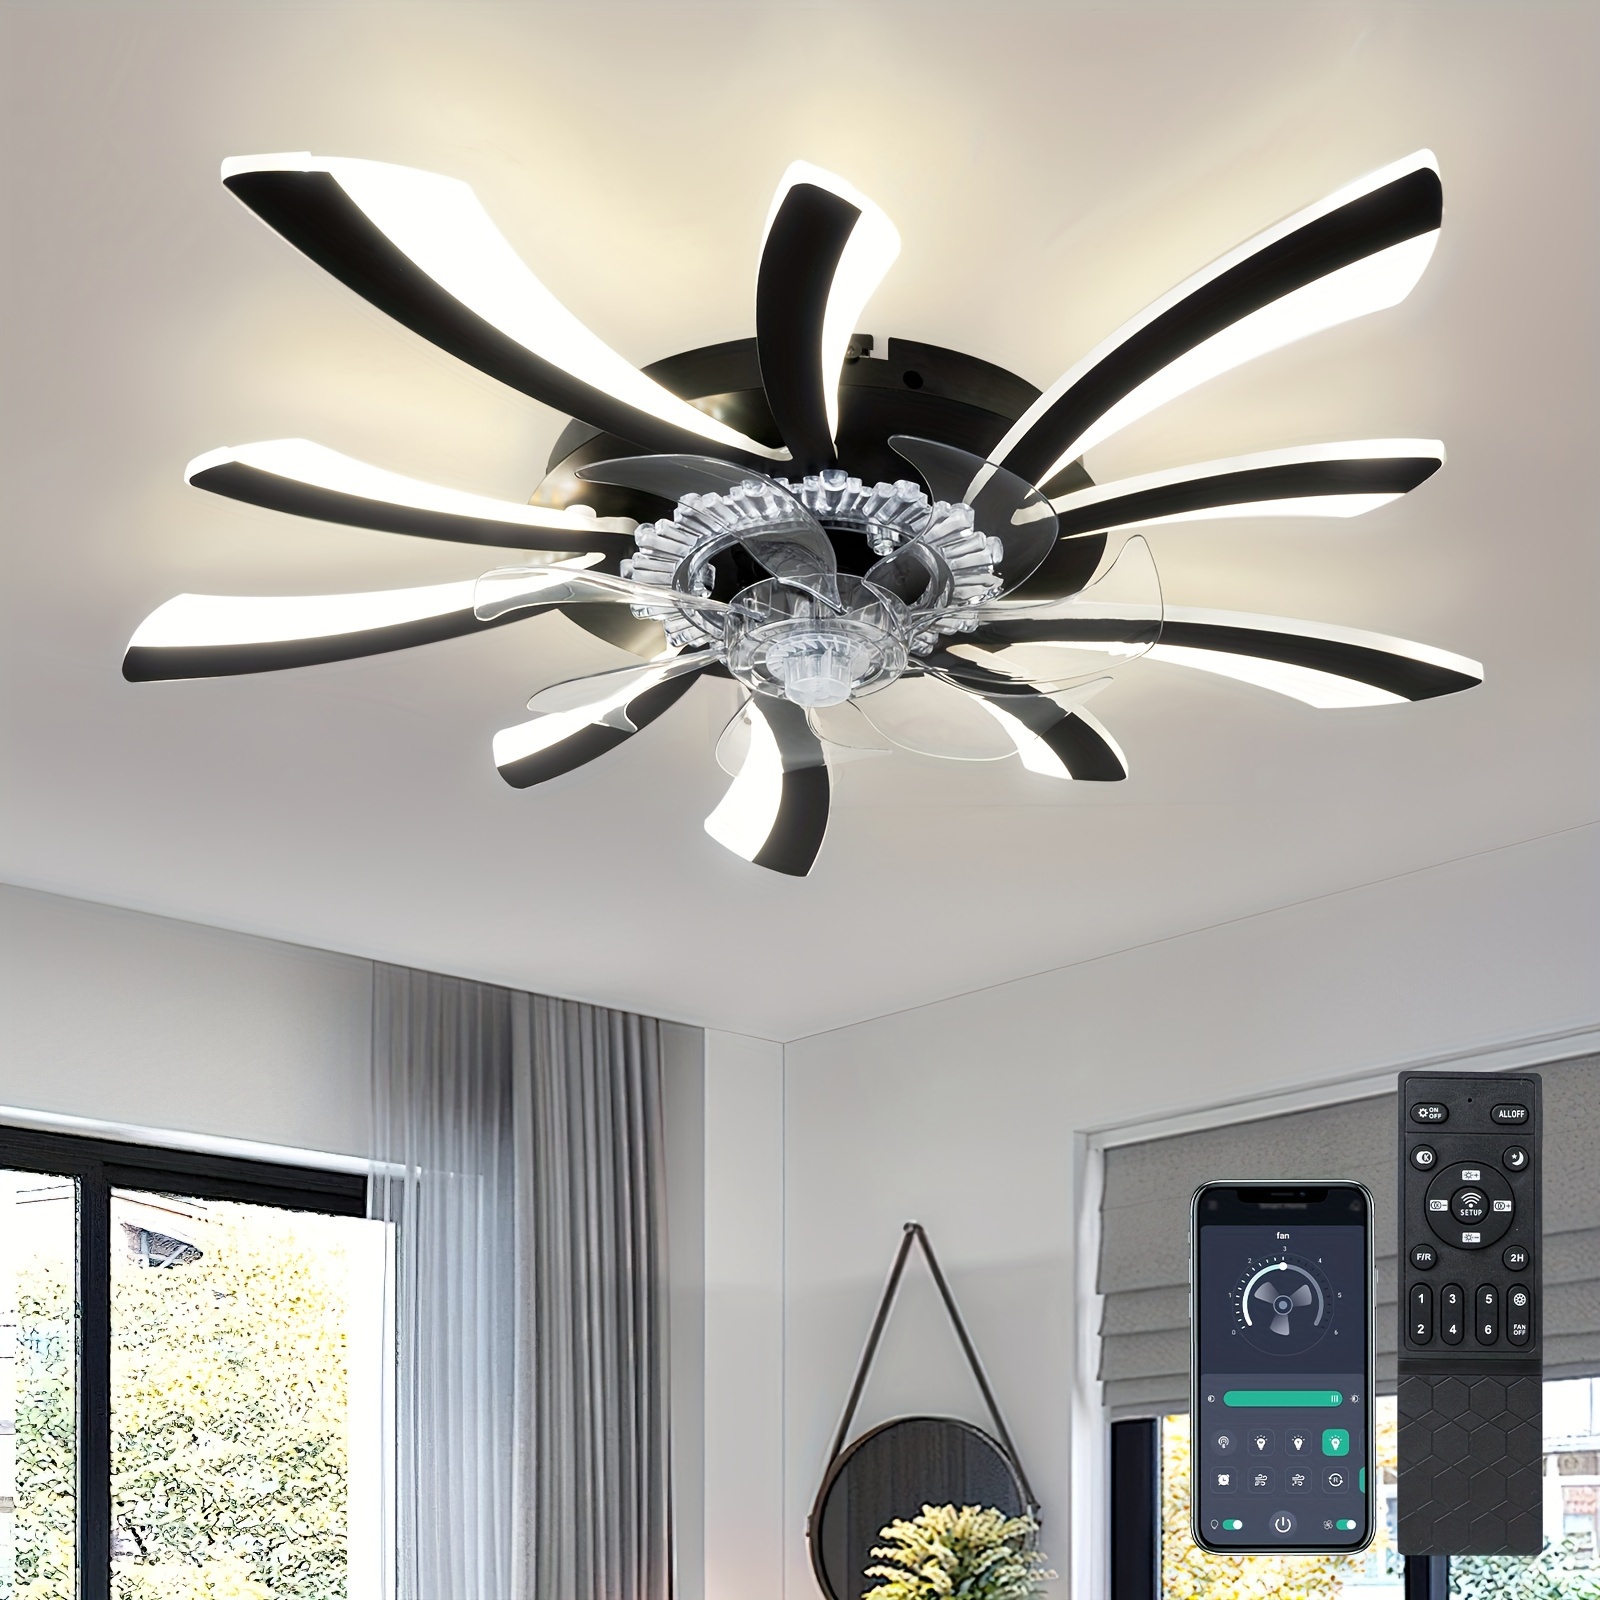 Ventilador de techo moderno con luces y Control remoto, lámpara